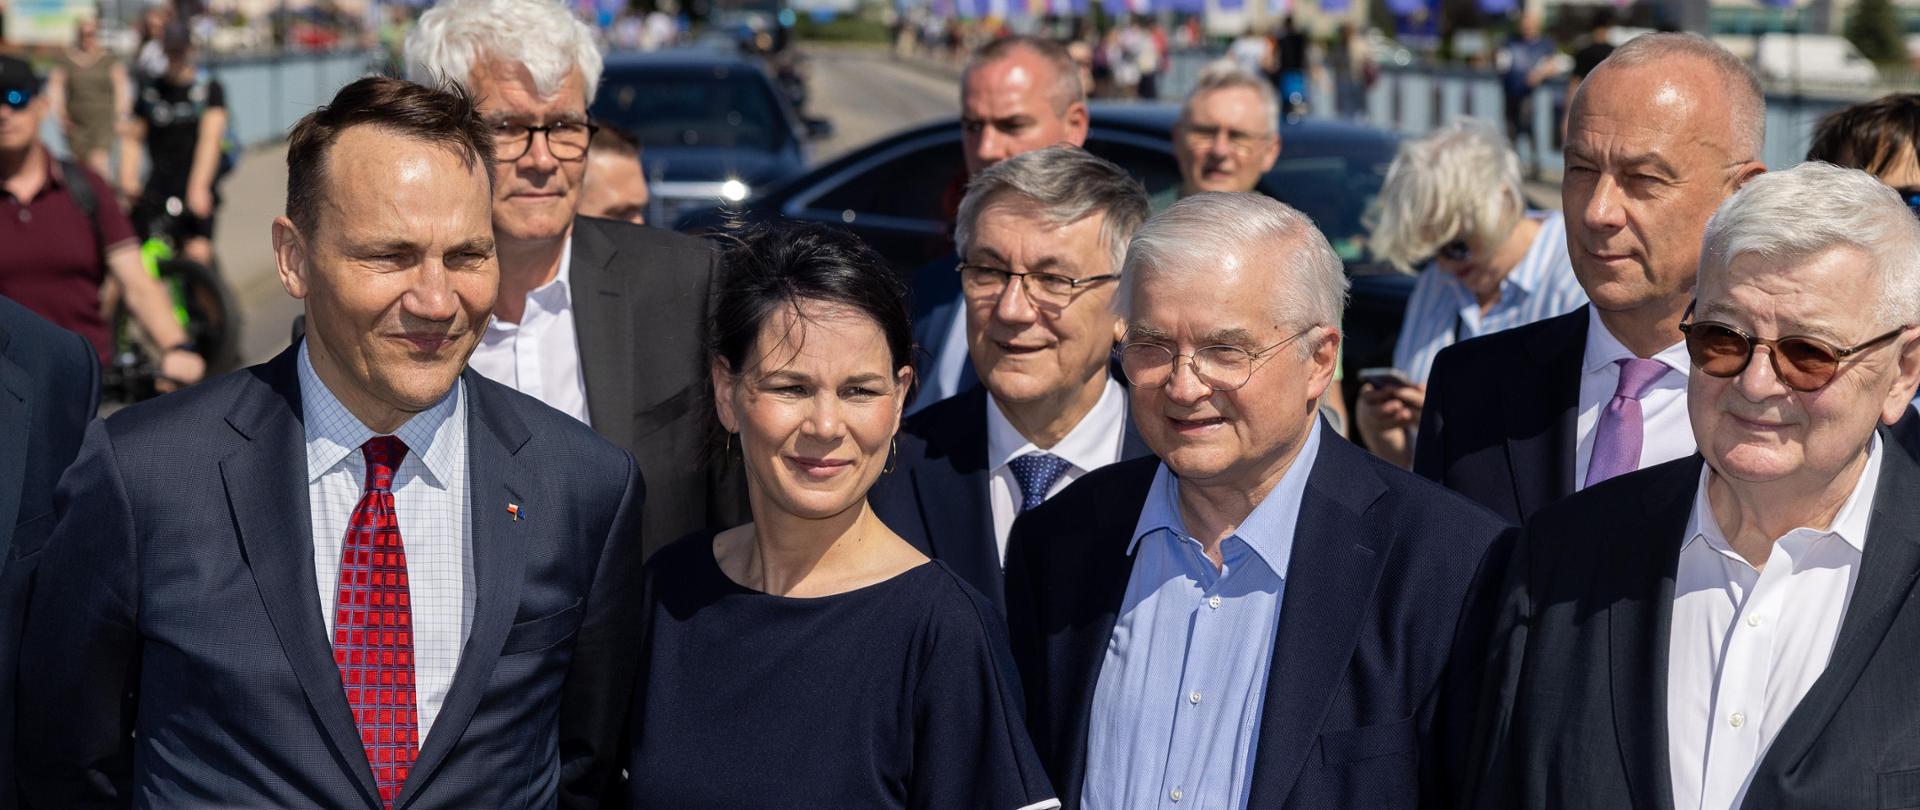 
Uroczyste obchody 20. rocznicy akcesji Polski do UE z udziałem szefów dyplomacji Polski i Niemiec - minister Radosław Sikorski i minister SZ Niemiec Annelena Baerbock
